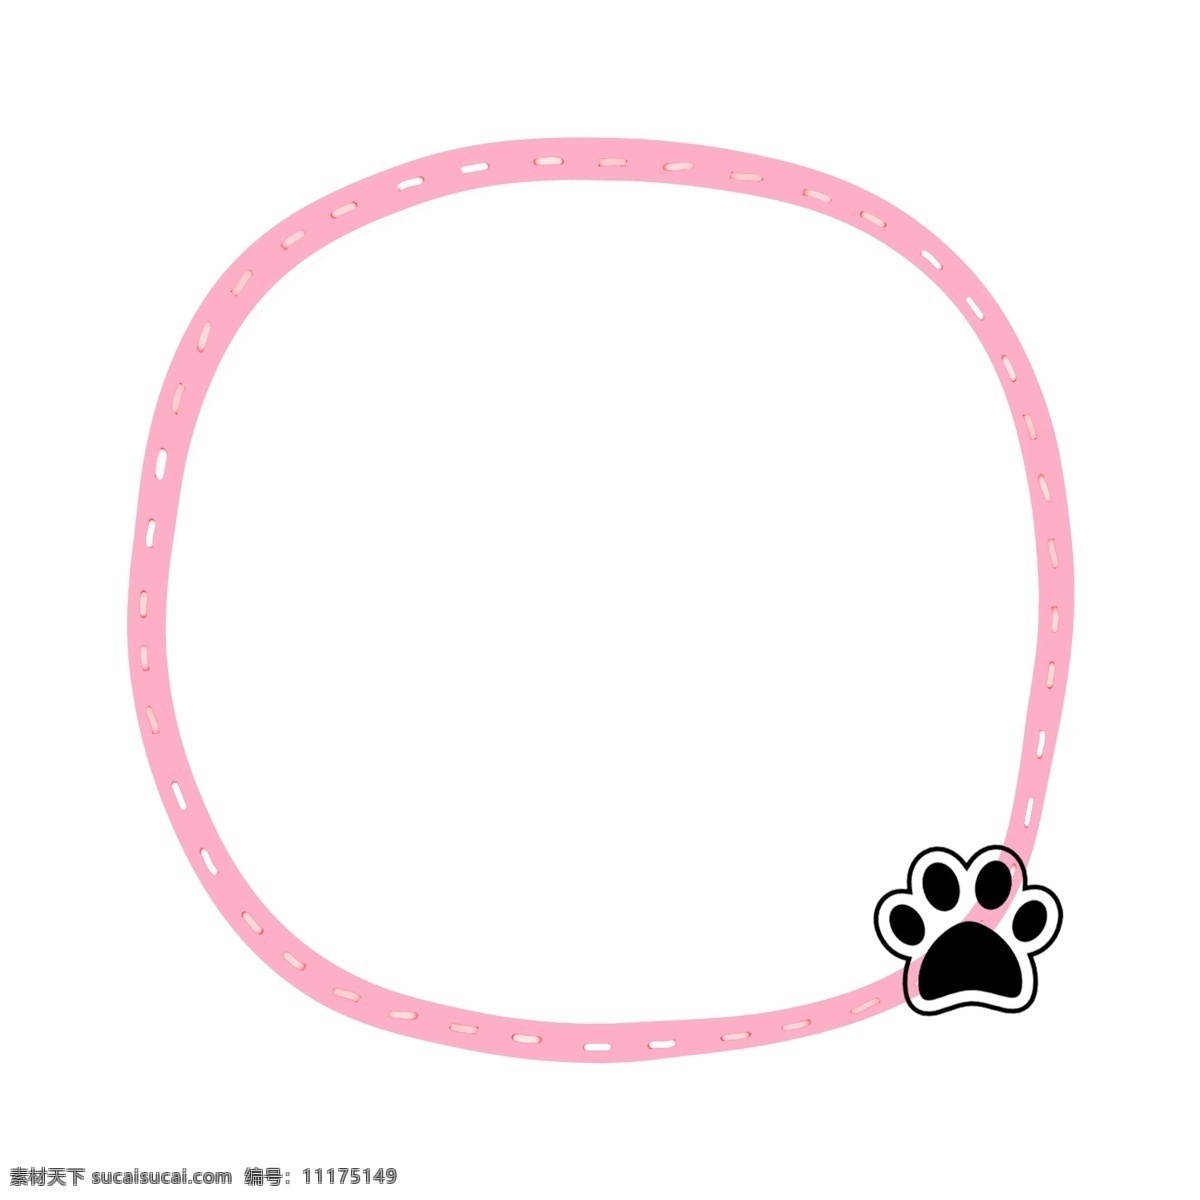 唯美 可爱 动物 小狗 爪子 边框 动物爪子 黑色爪子 小狗爪子 手绘 卡通 粉色边框 粉色圆圈 圆圈插画